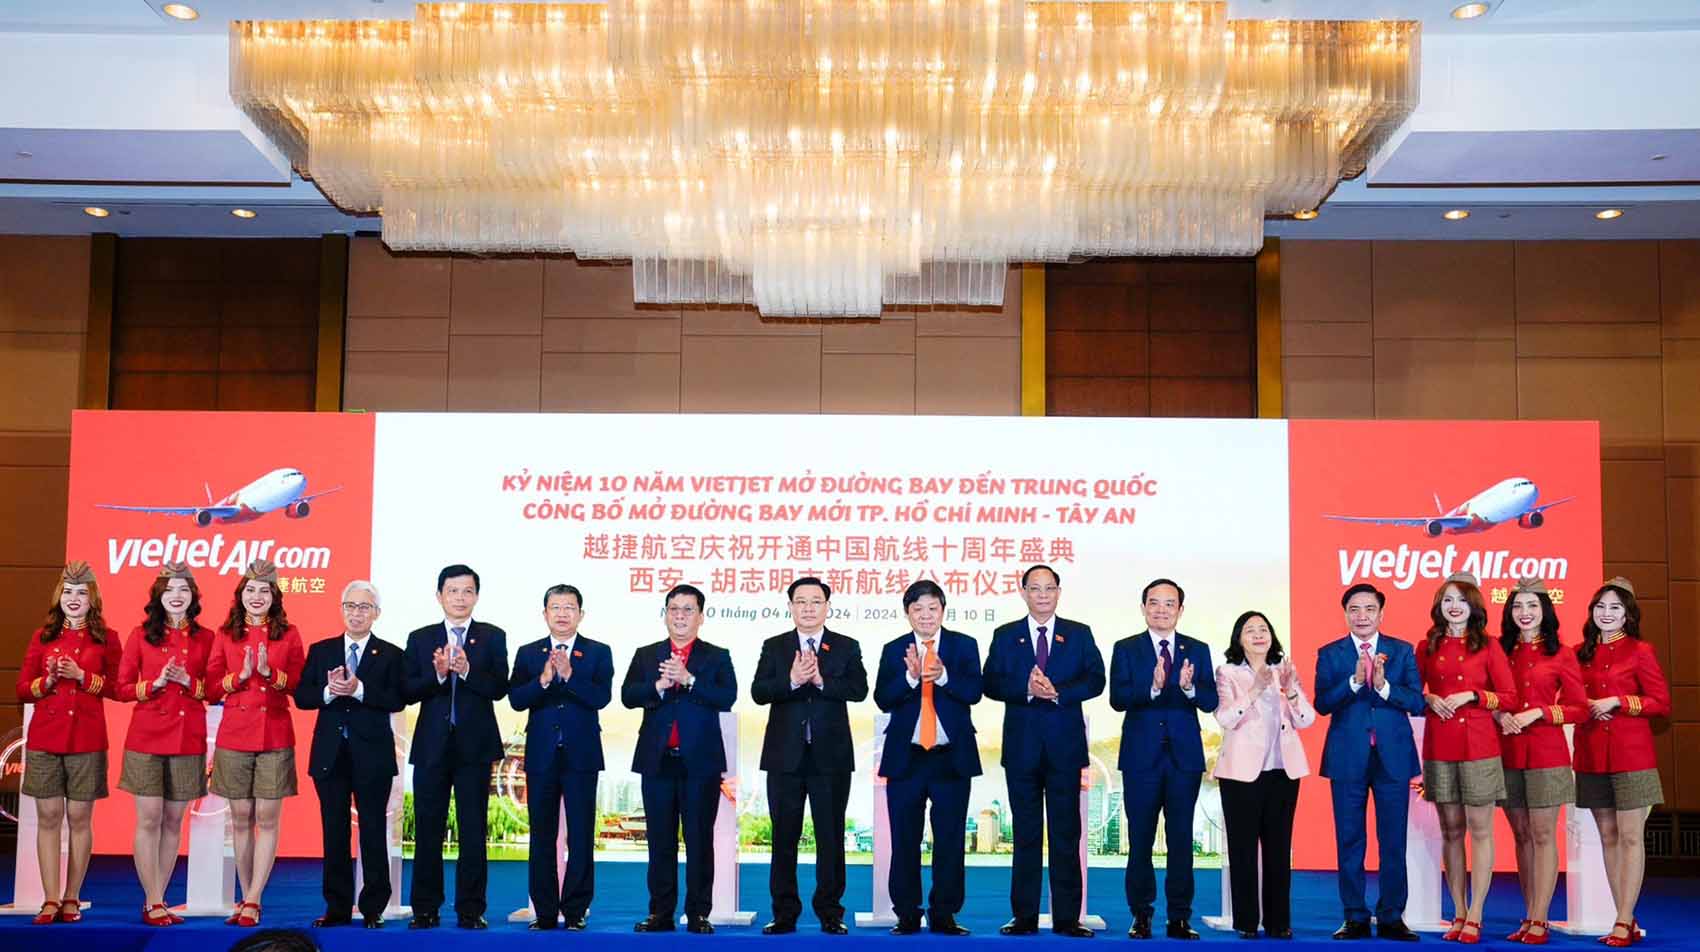 Chủ tịch Quốc hội Vương Đình Huệ cùng đoàn lãnh đạo cấp cao Việt Nam - Trung Quốc tham dự lễ kỷ niệm 10 năm bay Trung Quốc và công bố đường bay TP Hồ Chí Minh - Tây An của Vietjet. Ảnh: Phương Tuyền  